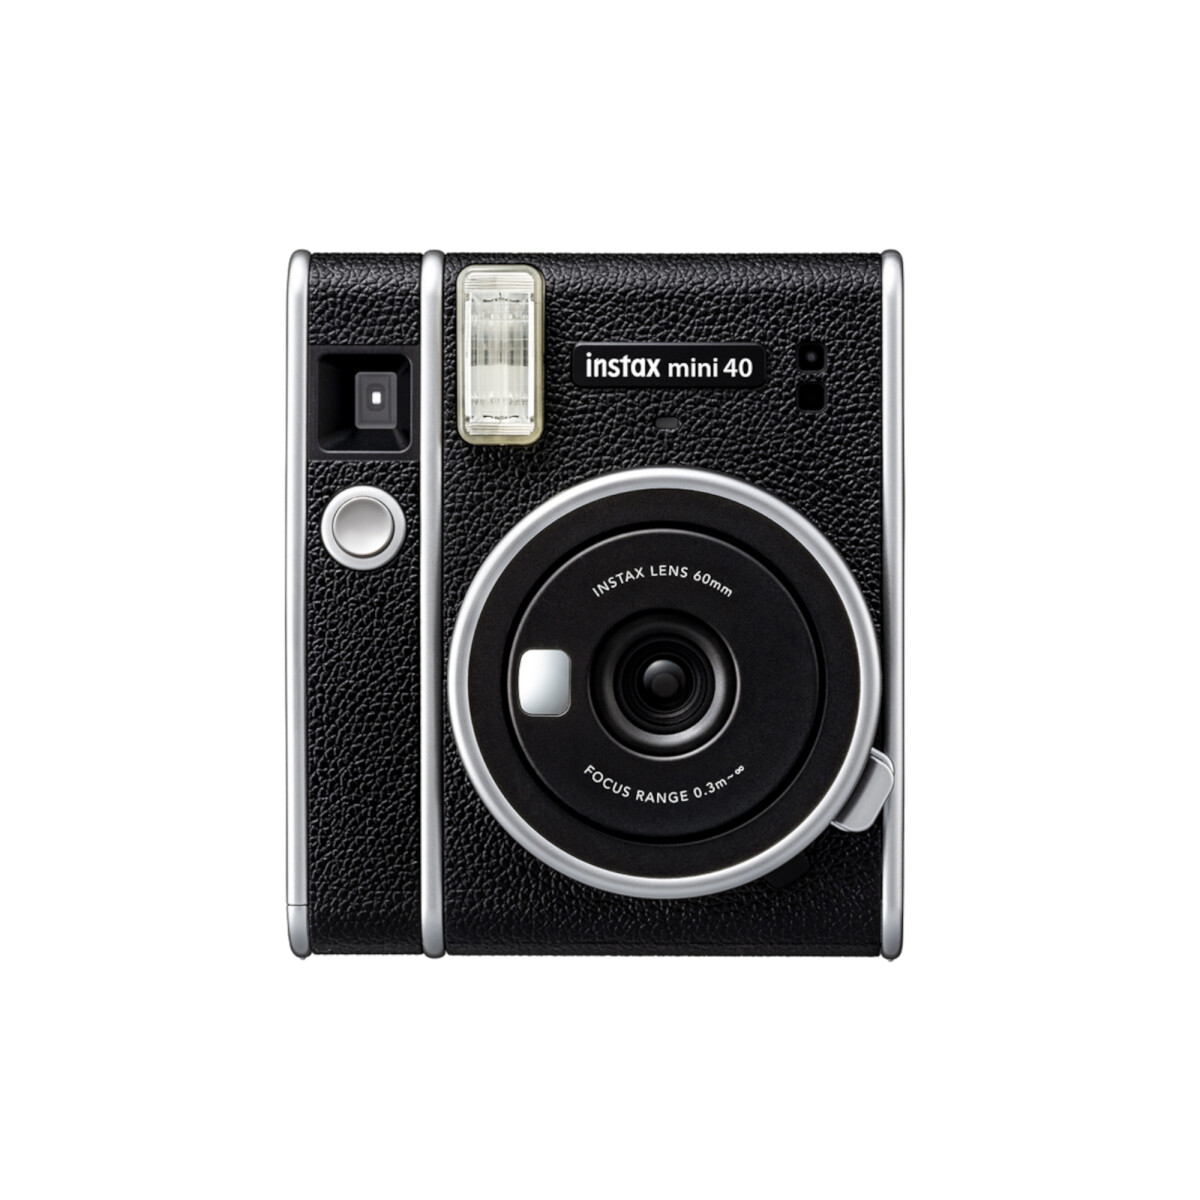 Fujifilm - Cámara Digital Instax Mini 40 - Fotos Instantáneas. Diseño Compacto. Color Negro. - 001 